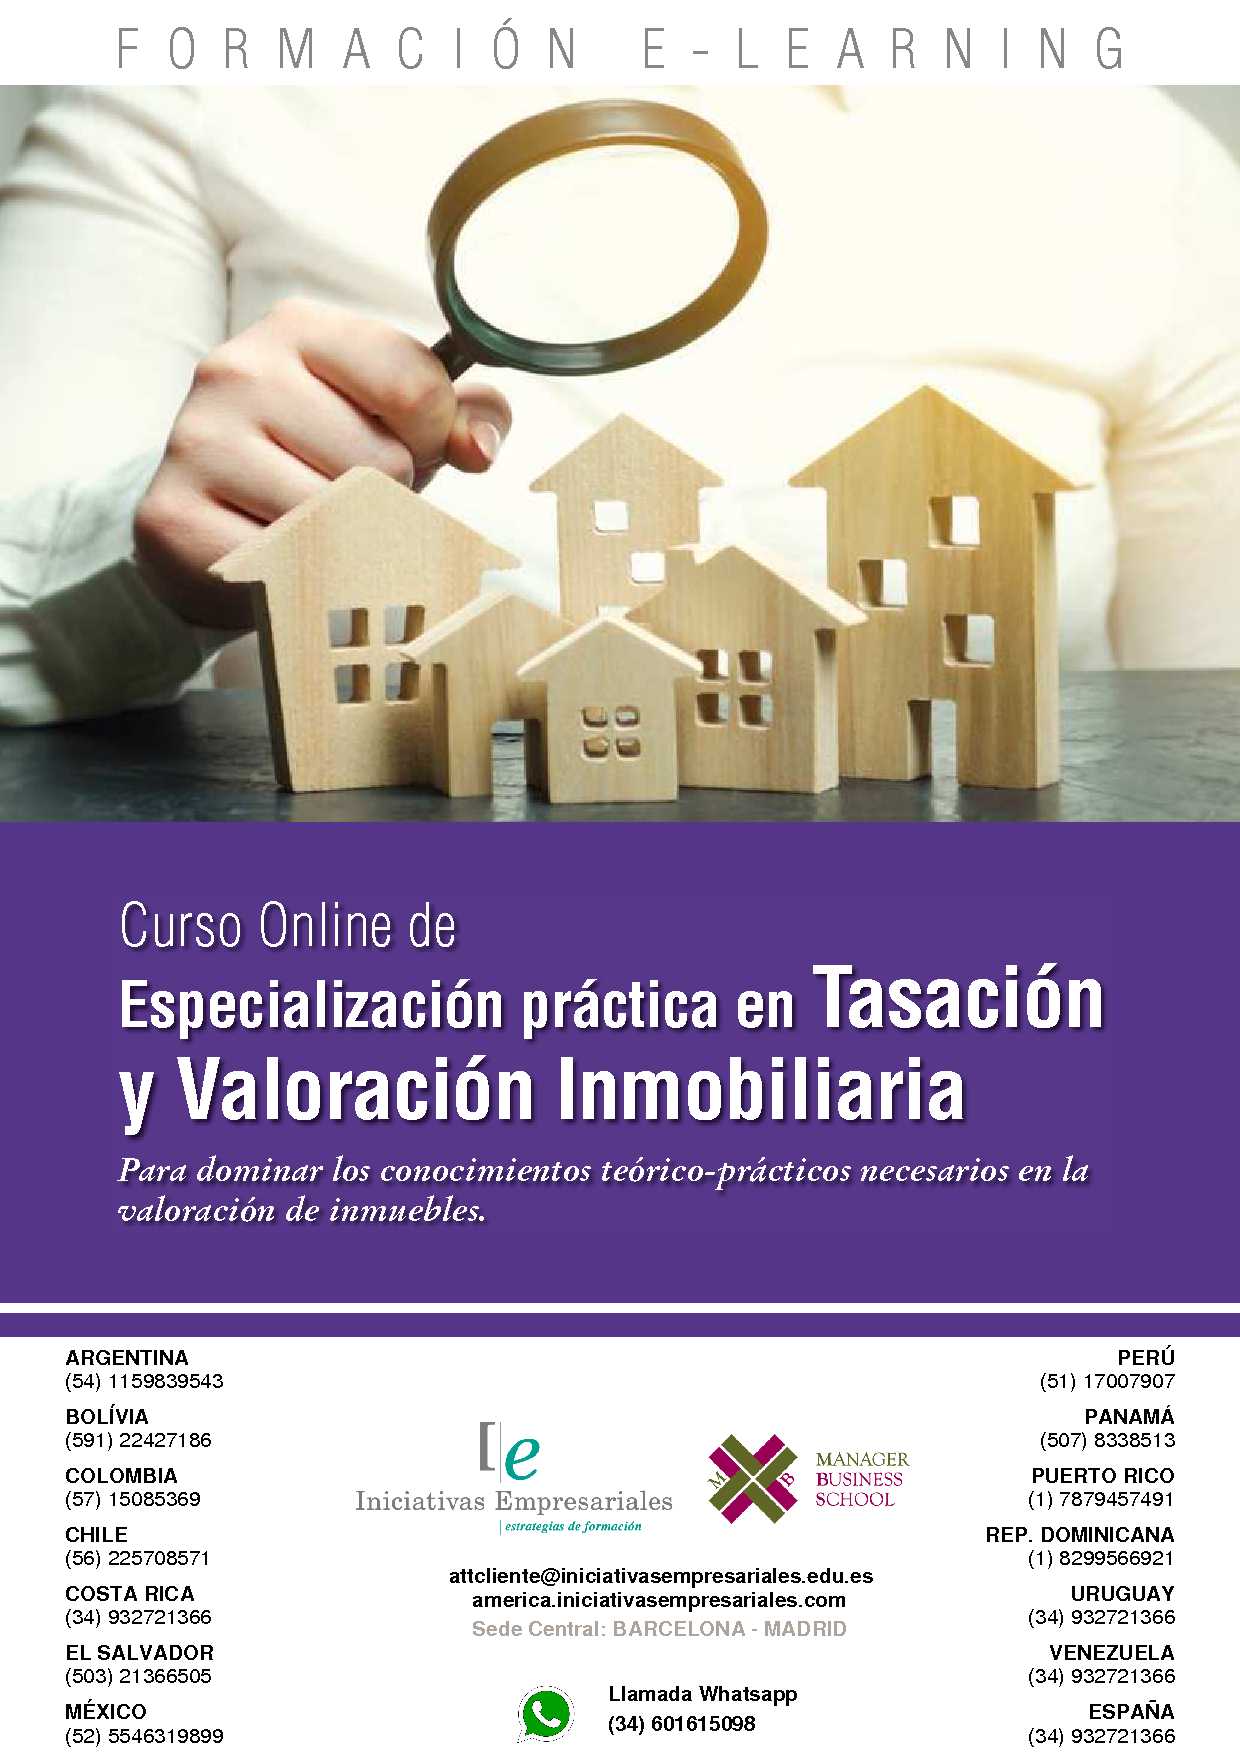 Especialización práctica en Tasación y Valoración Inmobiliaria